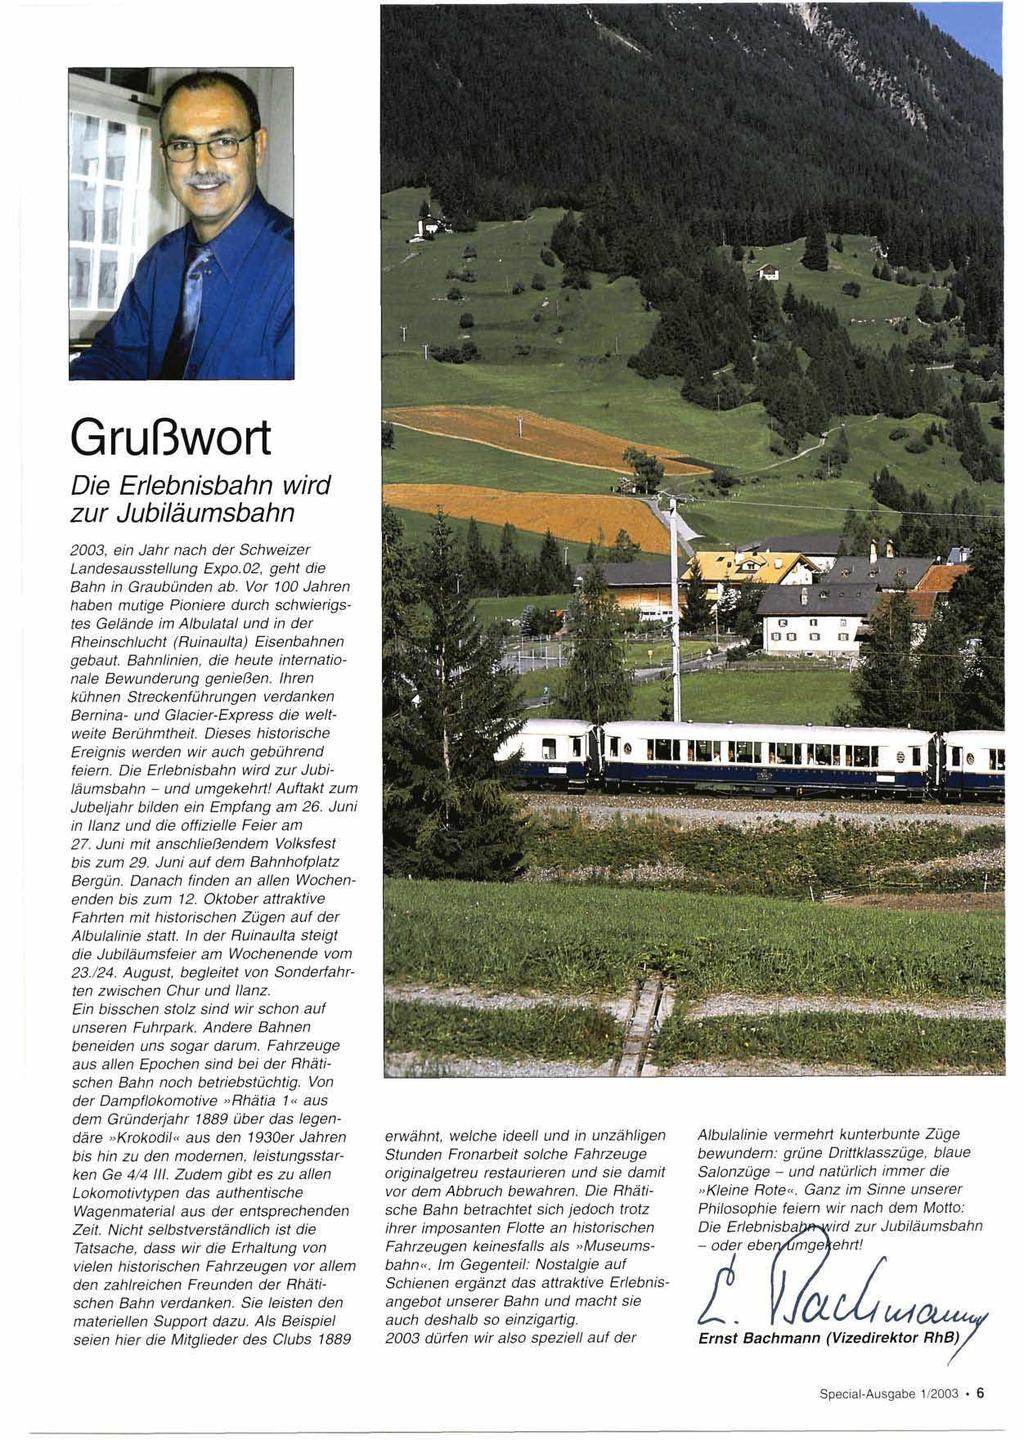 Grußwort Die Erlebnisbahn wird zur Jubiläumsbahn 2003, ein Jahr nach der Schweizer Landesausstellung Expo.02, geht die Bahn in Graubünden ab.